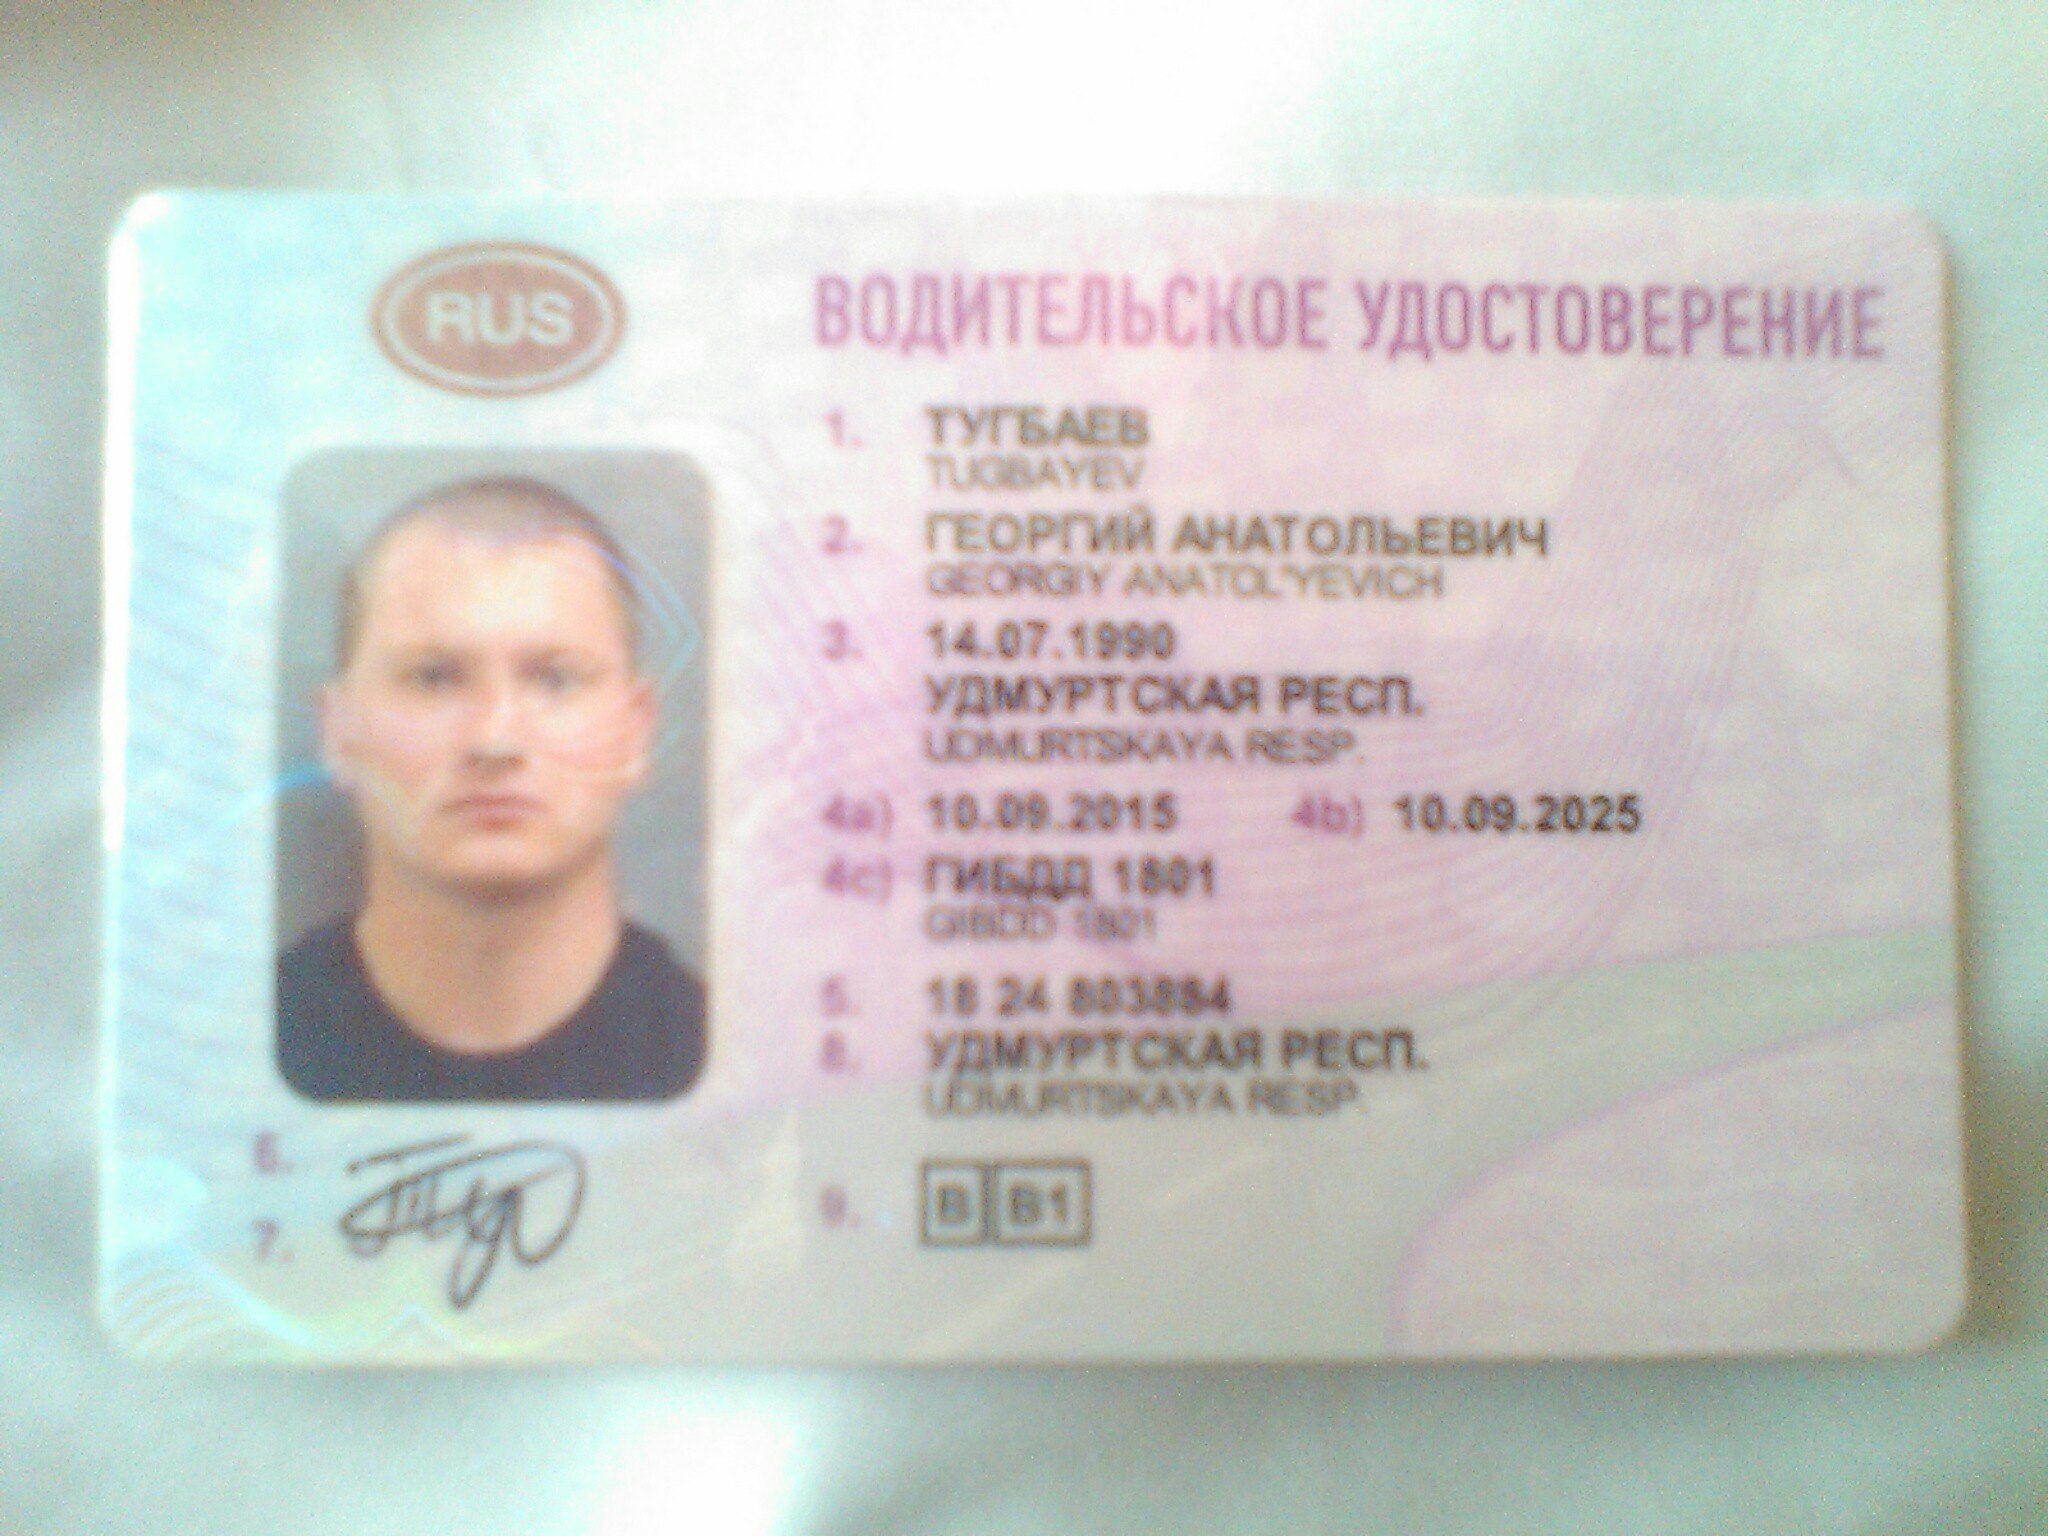 Водительское удостоверение Ижевск